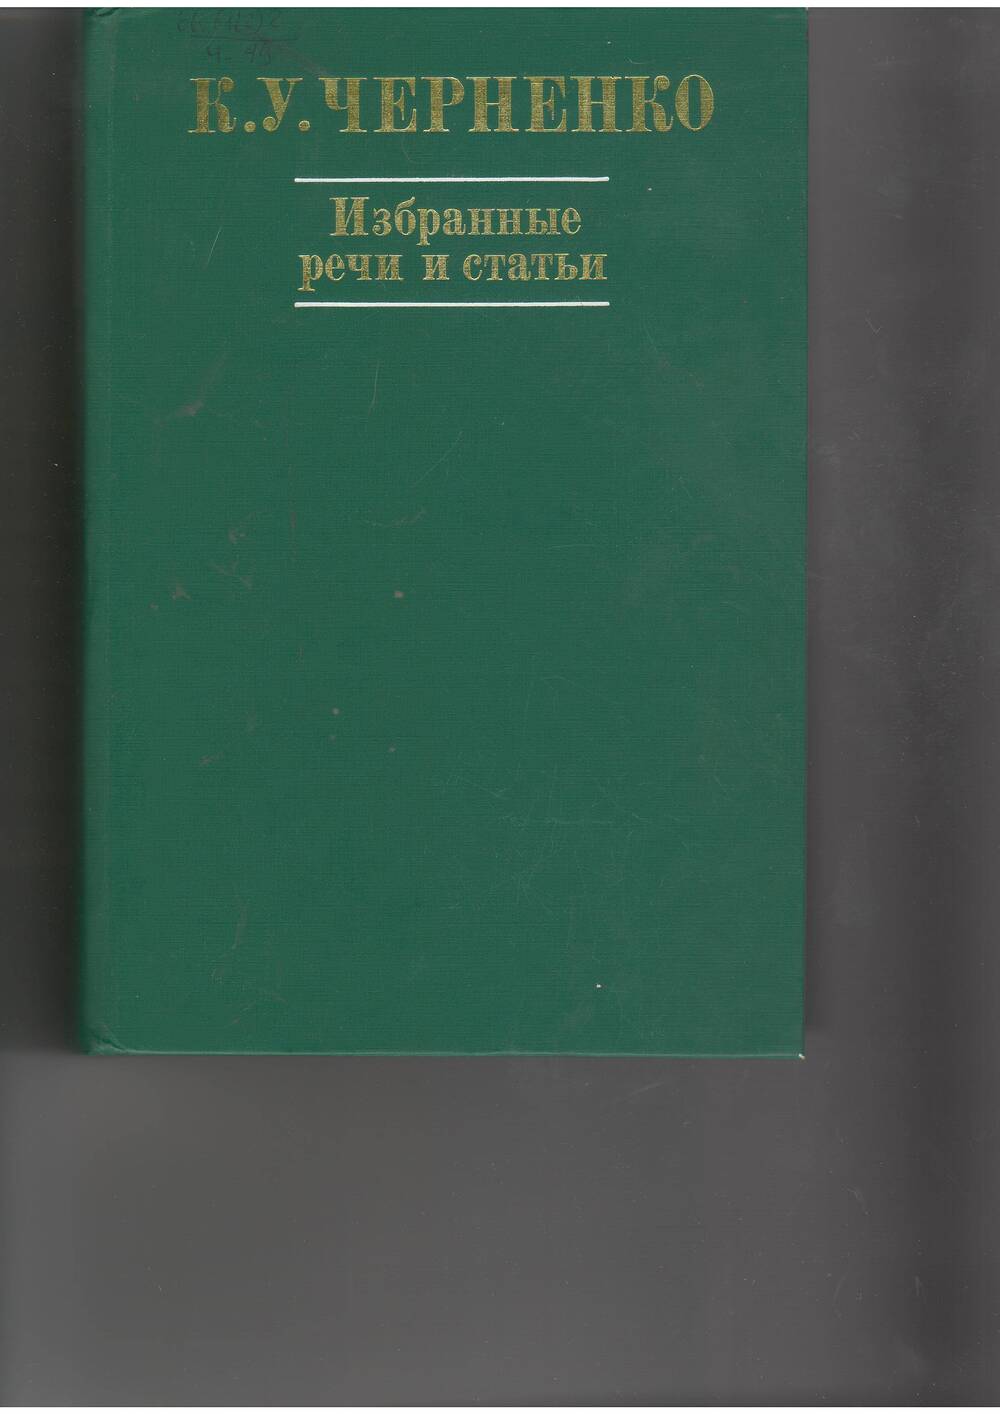 книга  Черненко К.. Избранные речи и статьи. - М: Политлит,1984.